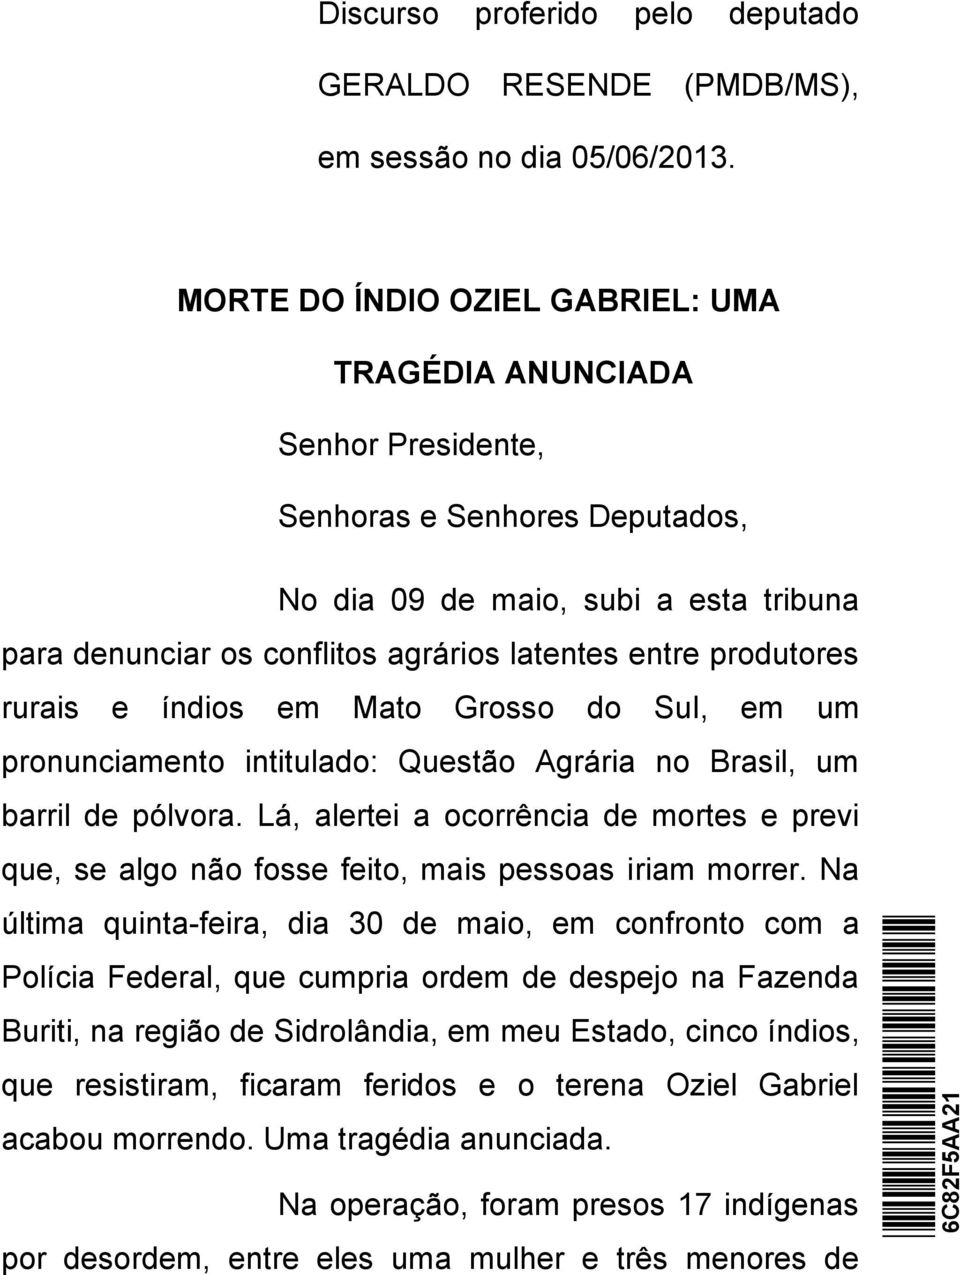 produtores rurais e índios em Mato Grosso do Sul, em um pronunciamento intitulado: Questão Agrária no Brasil, um barril de pólvora.